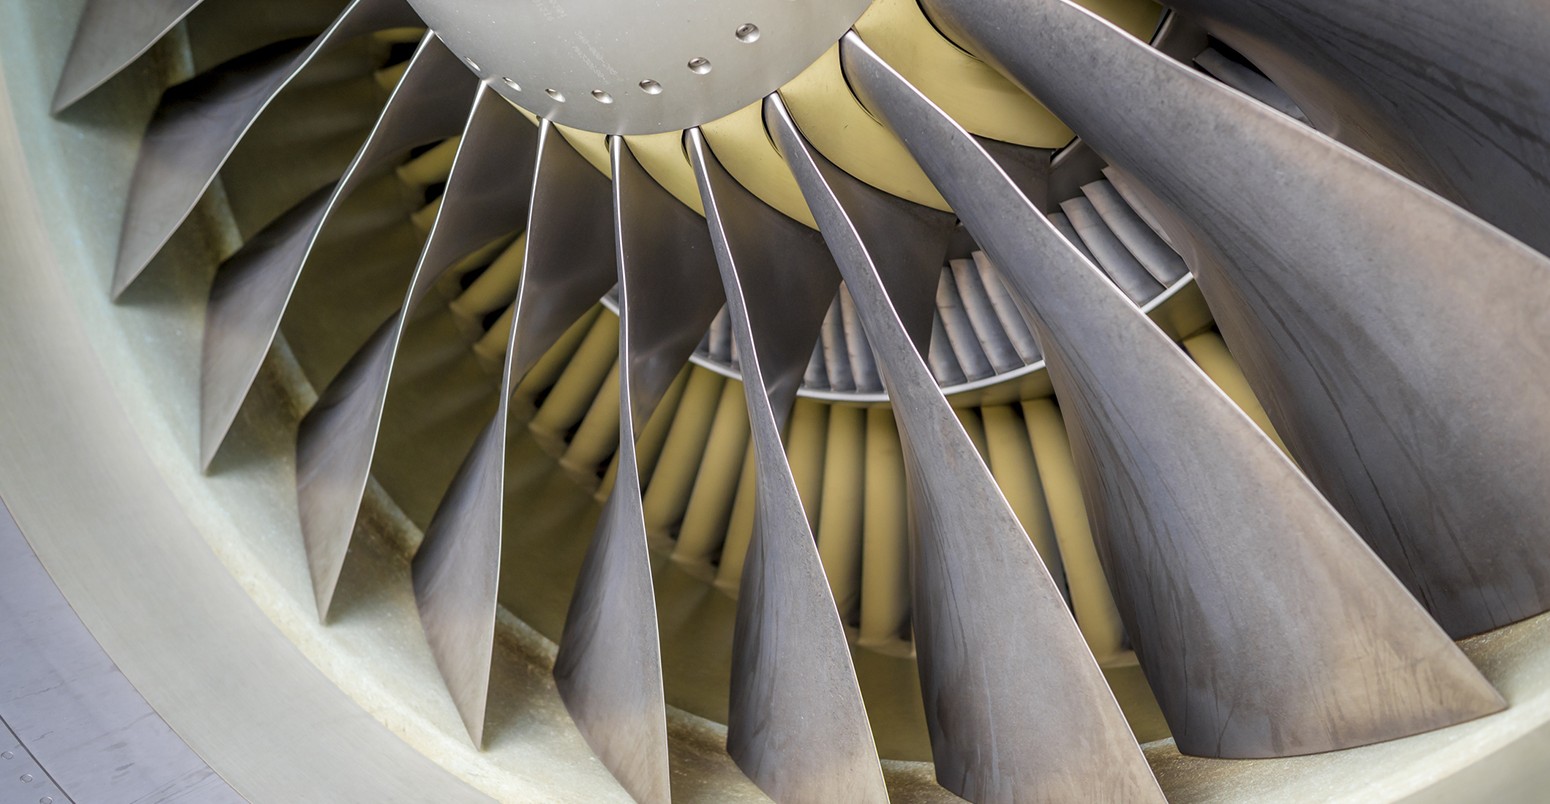 Blades in jet engine turbine